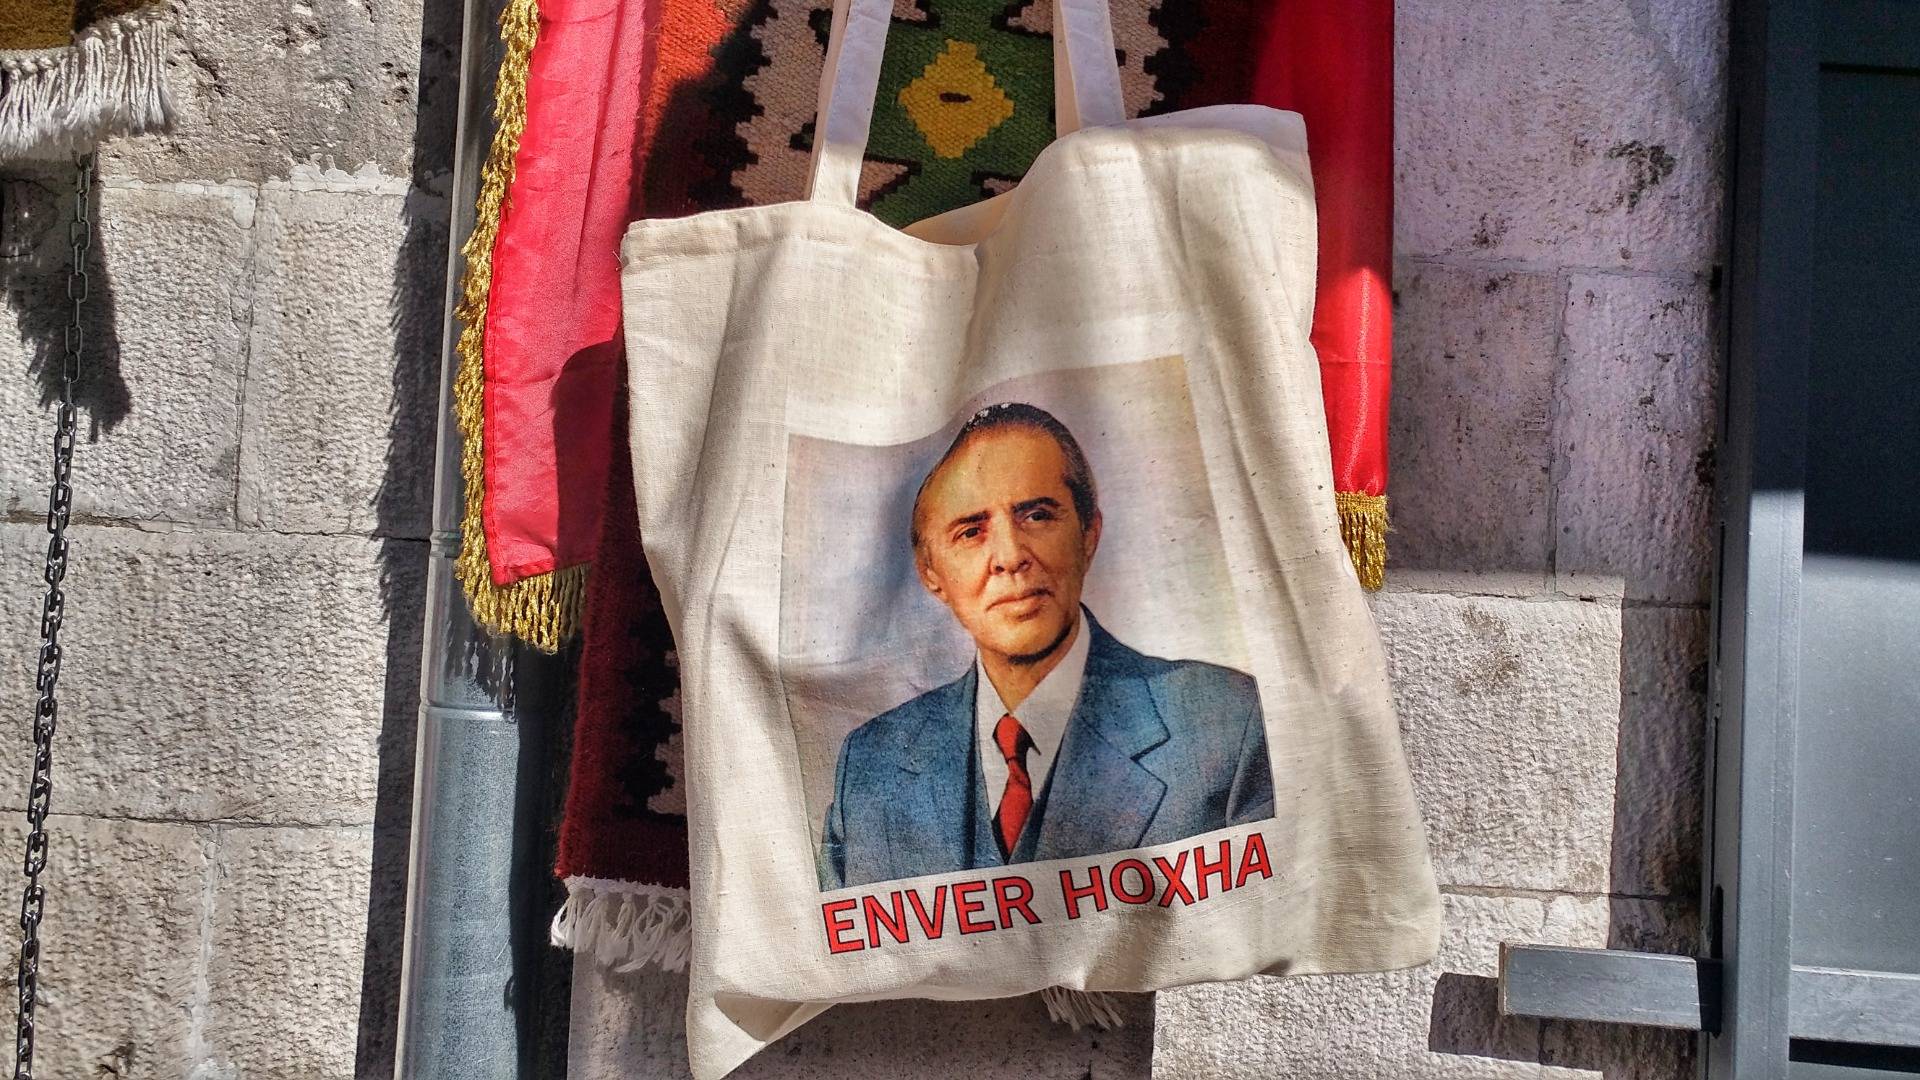 Enver Hoxha on a bag